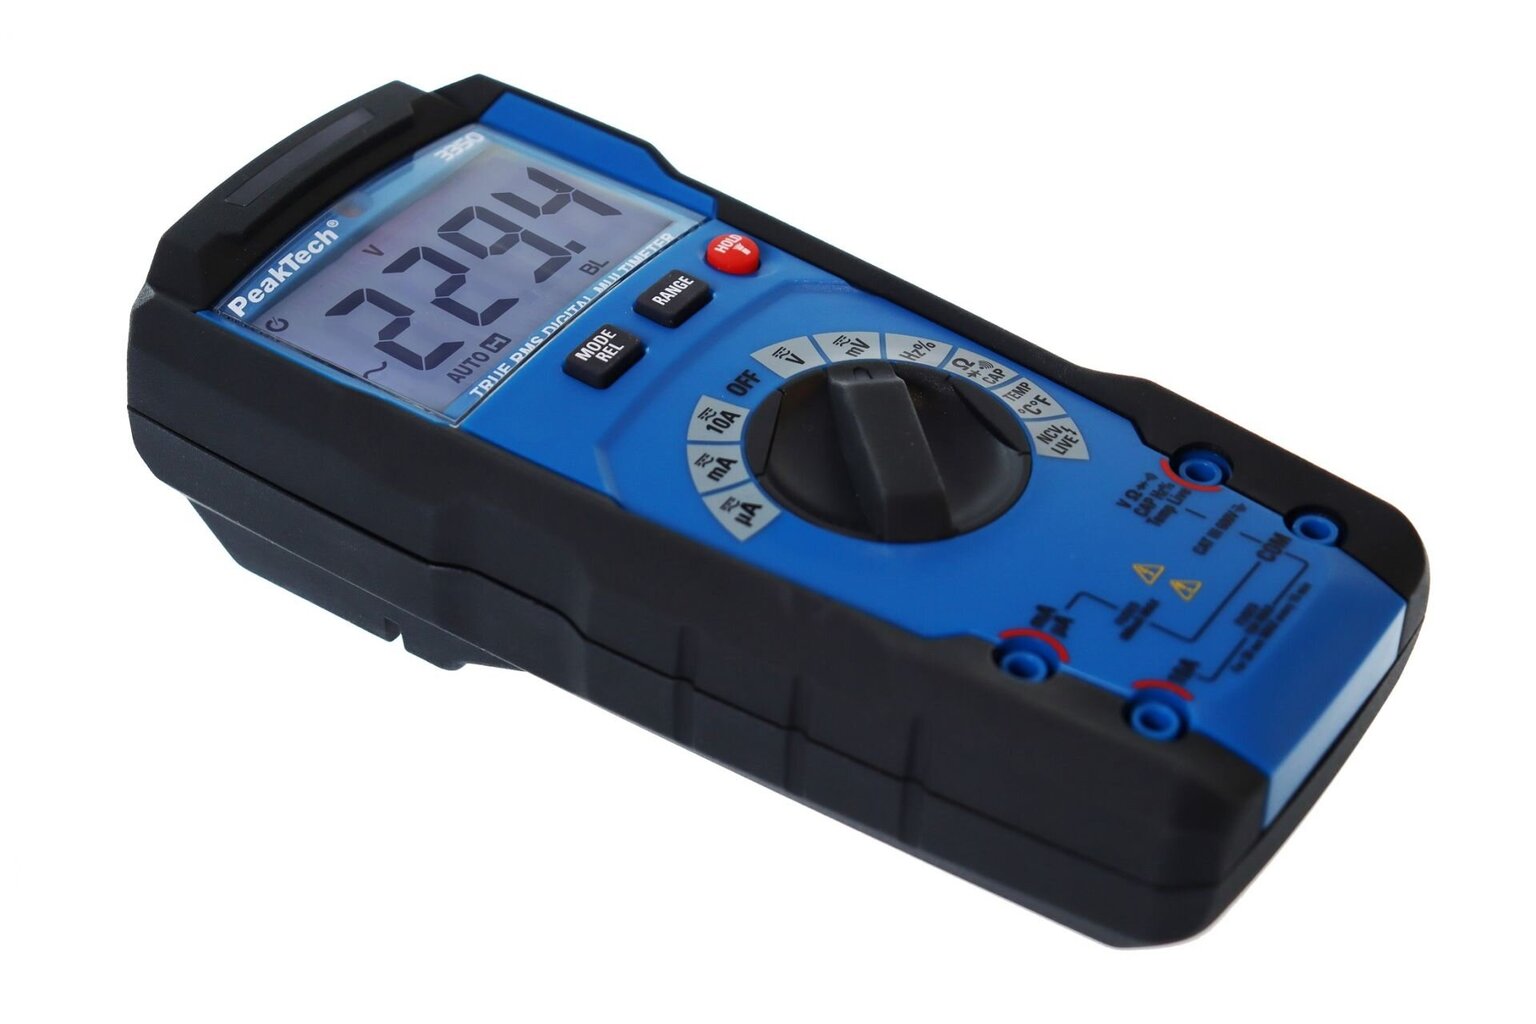 TrueRMS digitālais multimetrs PeakTech® P 3350, 6000 aprēķināts, automātisks diapazons цена и информация | Rokas instrumenti | 220.lv